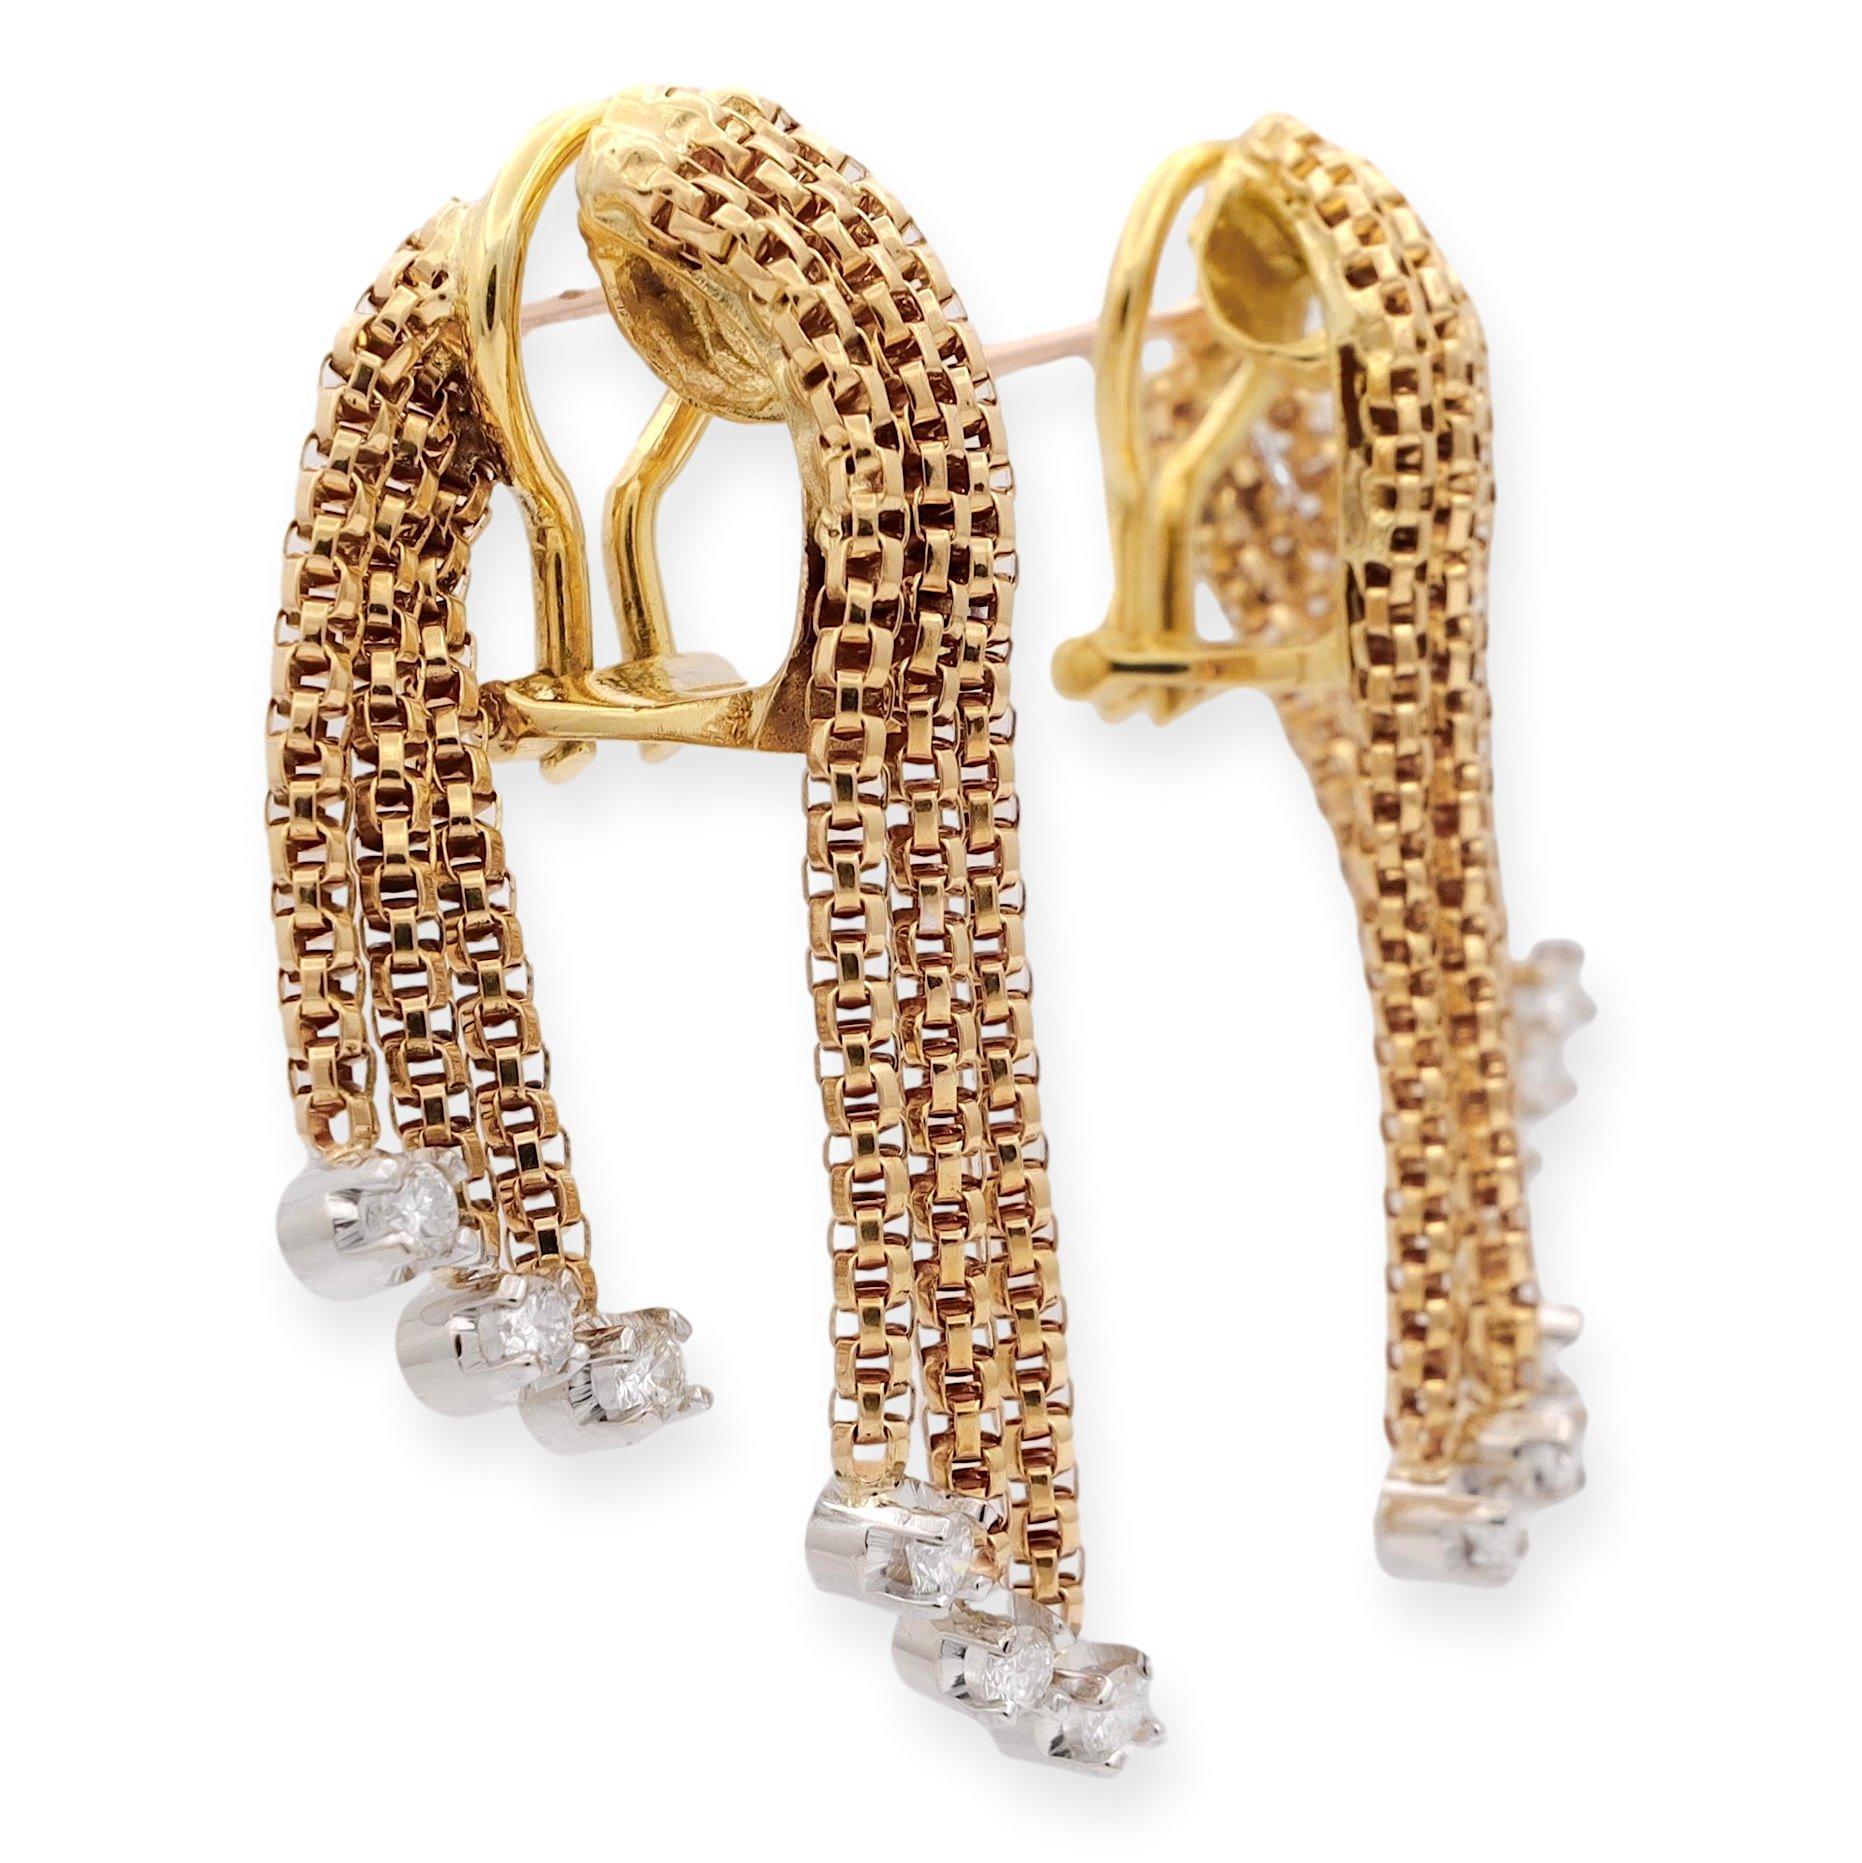 Vintage Drop Earrings, ein Zeugnis italienischer Handwerkskunst. Die aus 18 Karat Gelbgold gefertigten Edelsteine sind mit einem Dutzend runder Diamanten im Brillantschliff besetzt, die in Weißgoldzacken gefasst sind und insgesamt 0,60 Karat wiegen.